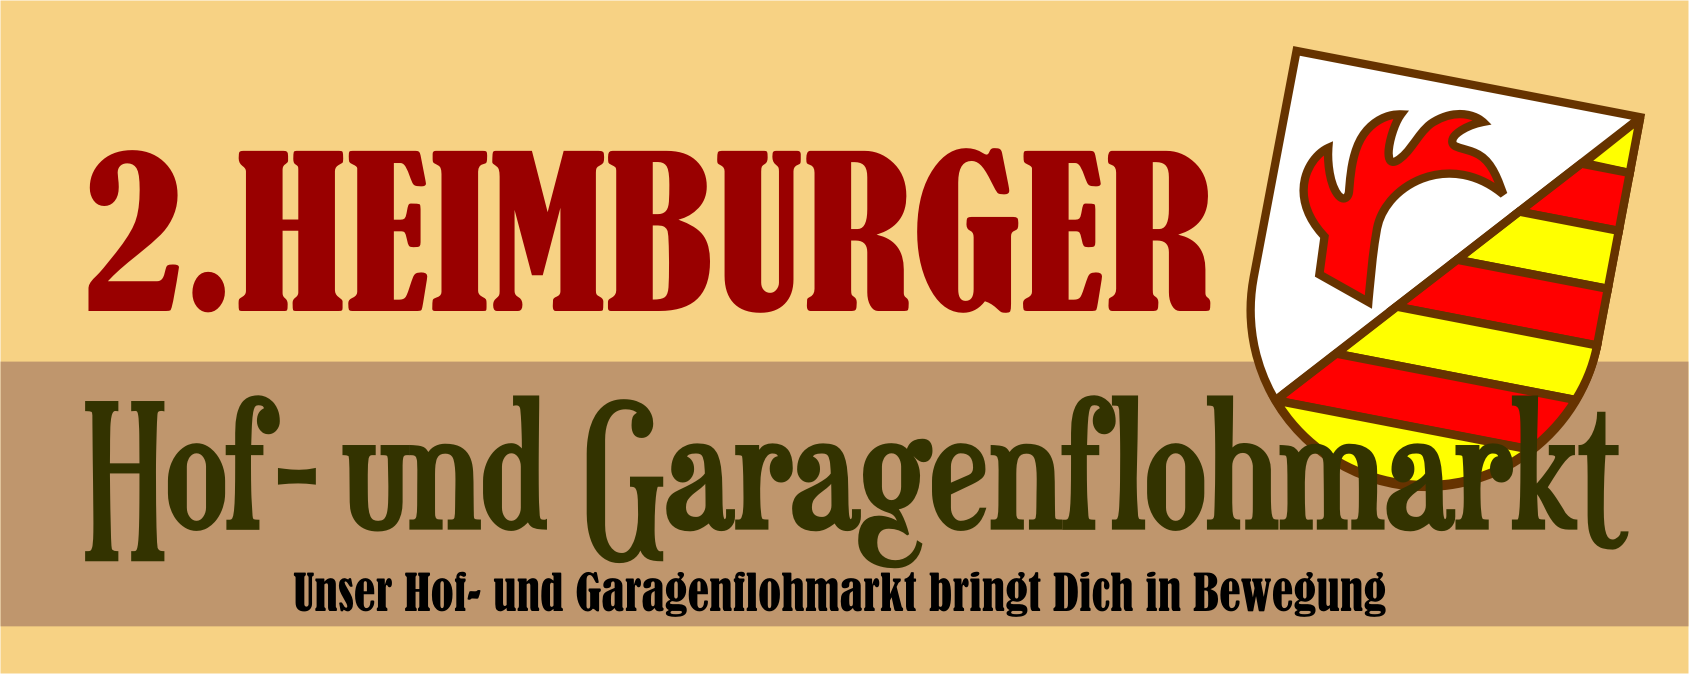 2. Heimburger Hof-und Garagenflohmarkt